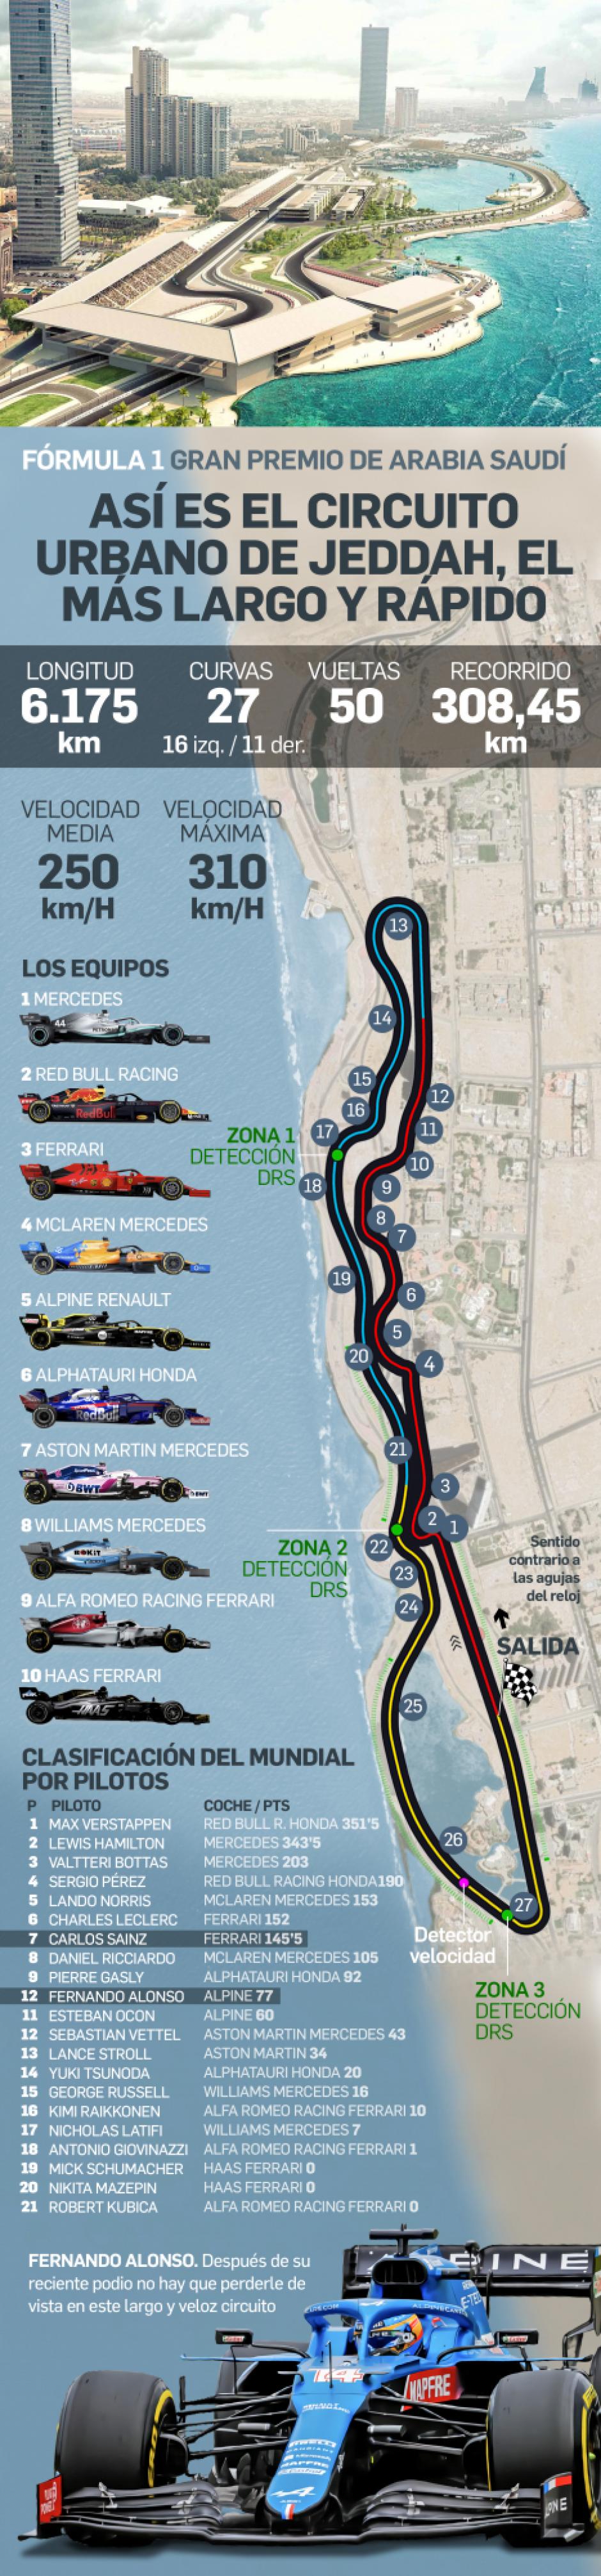 La nueva pista árabe contará con 27 curvas, cuatro más que Singapur y seis más que Abu Dhabi